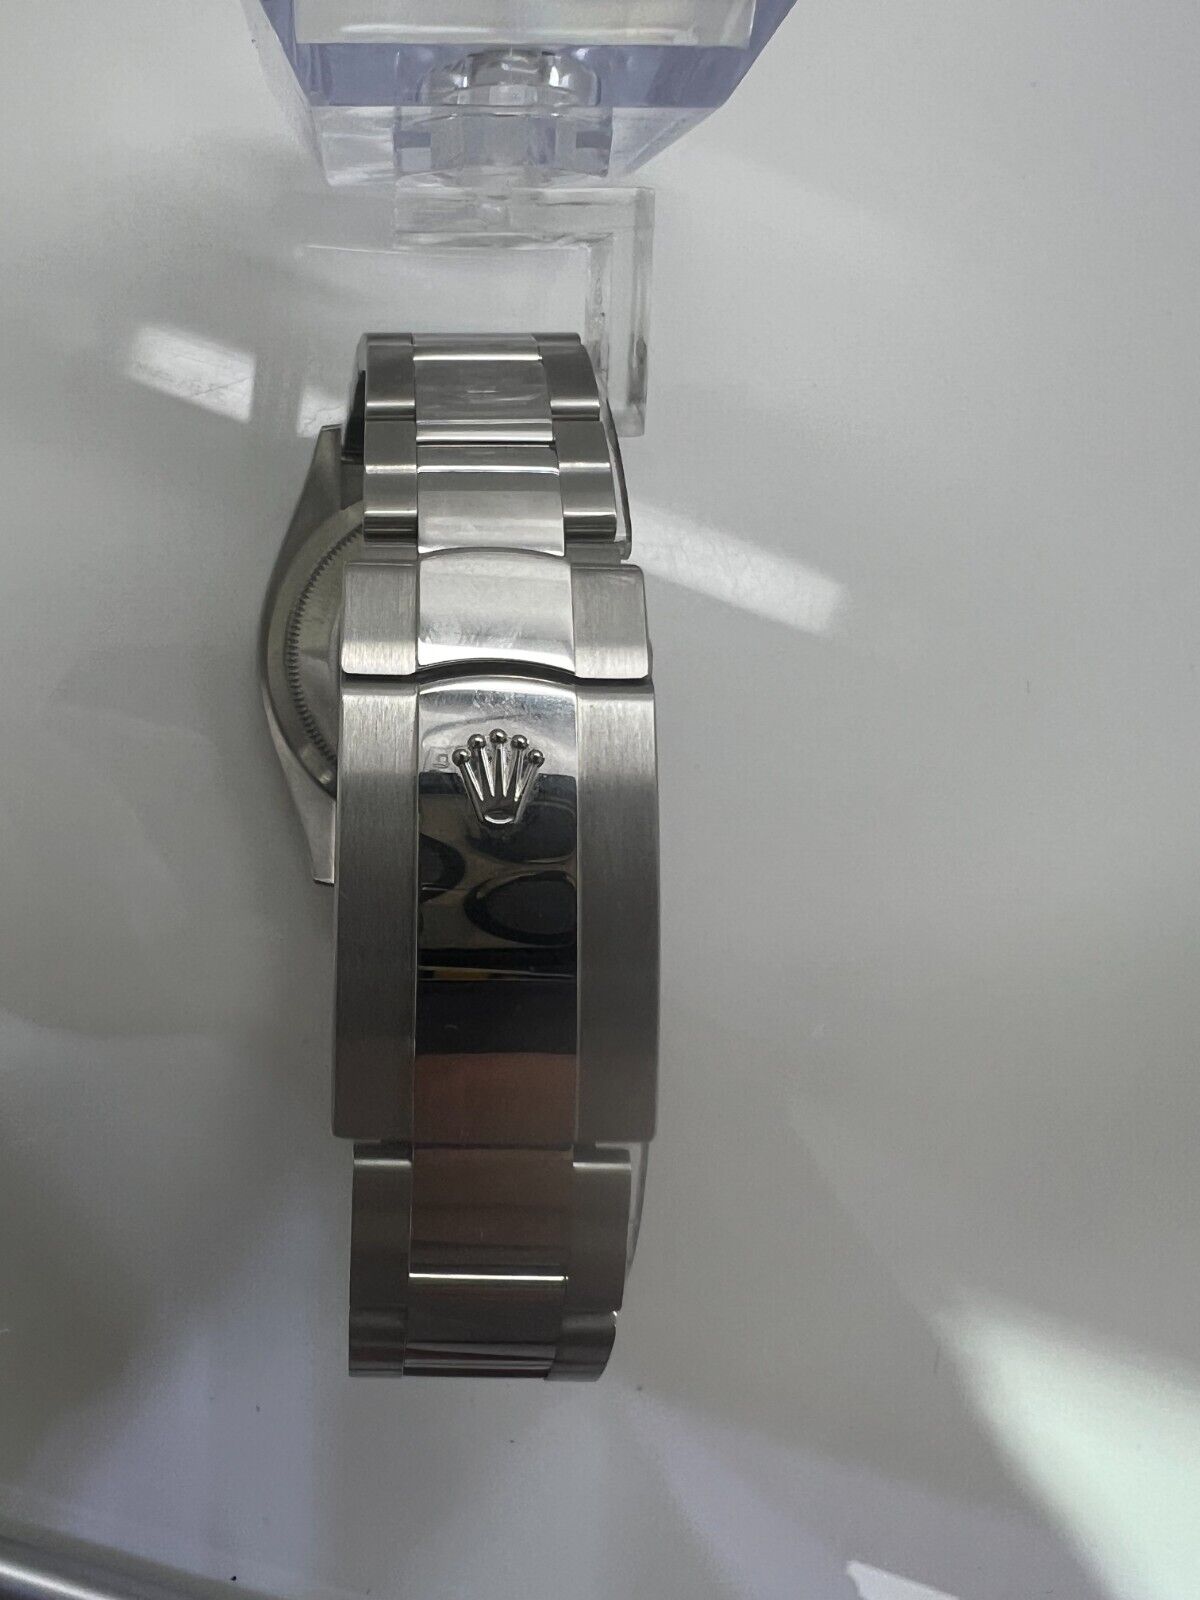 Rolex Datejust 126200 Wimbledon Silver Oyster Bracelet Watch New